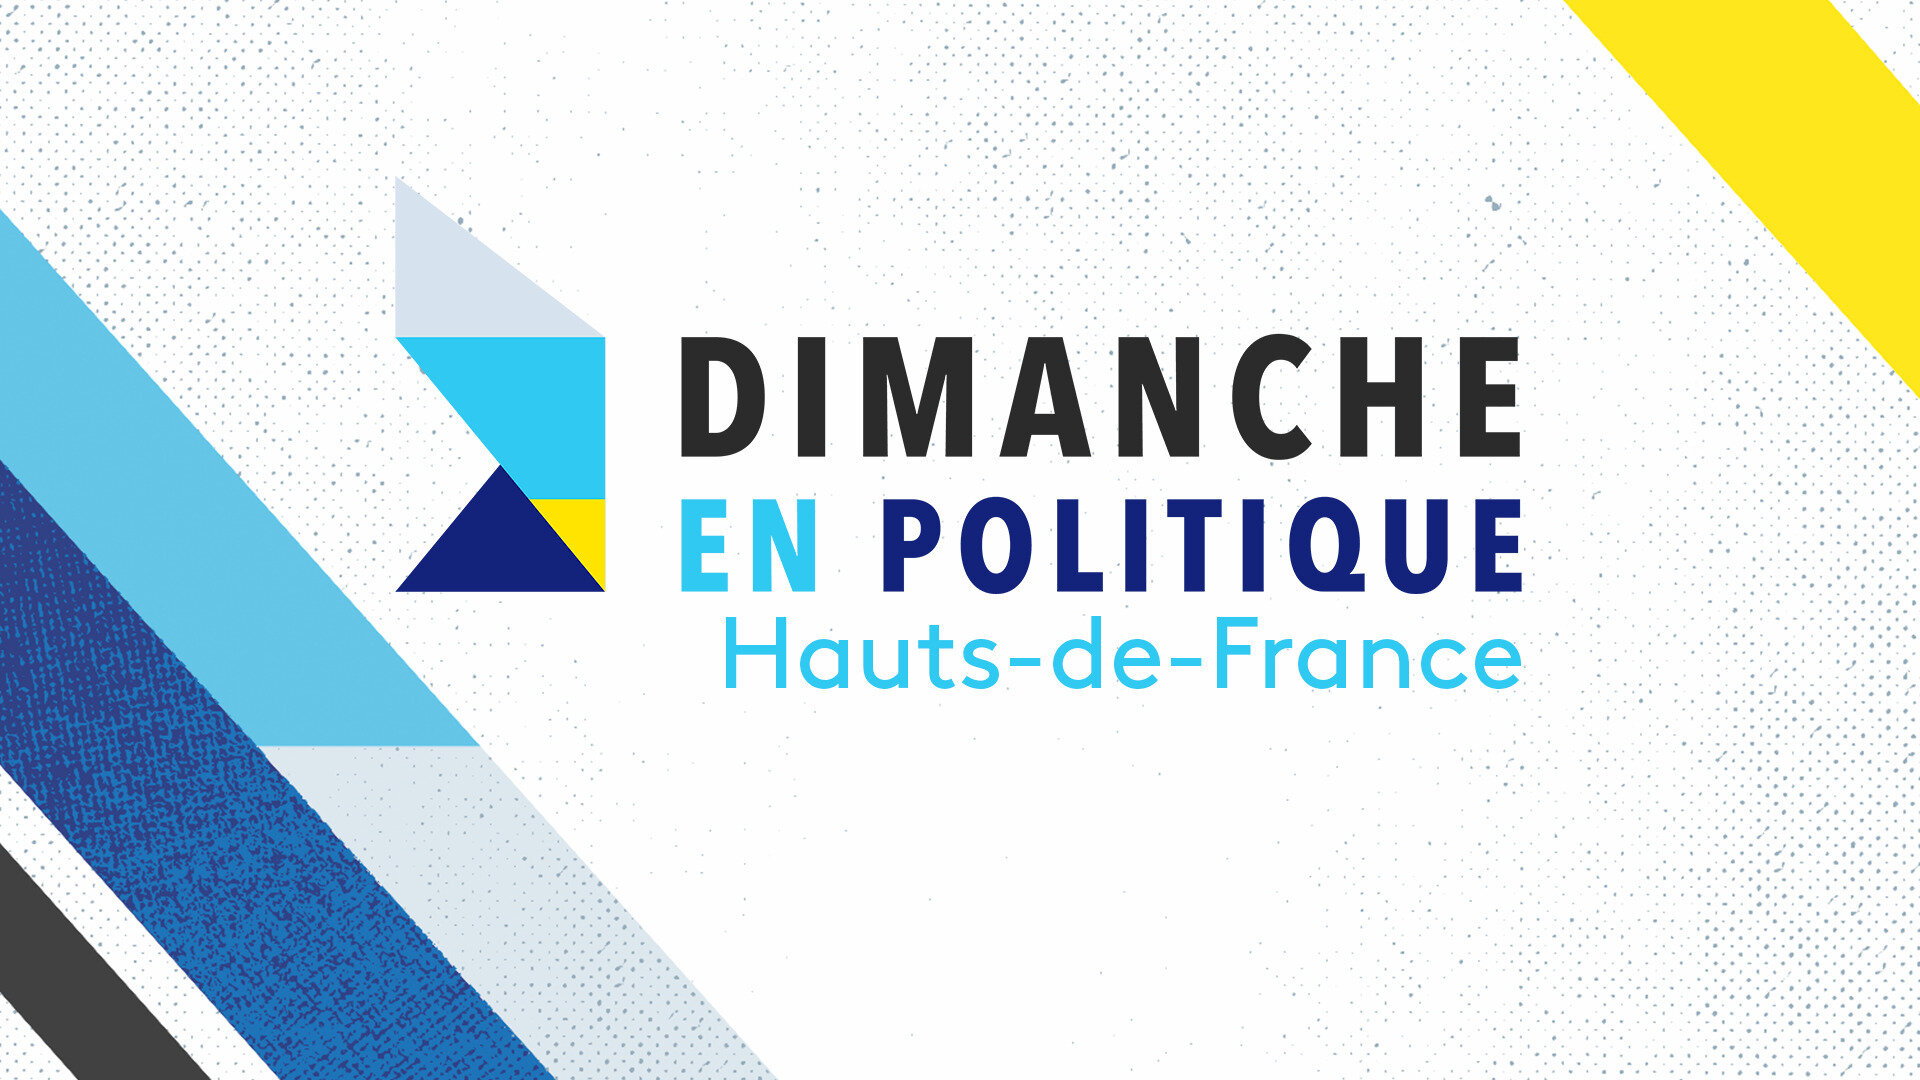 Dimanche en politique - Hauts-de-France : #MeTooPolitique : briser le silence